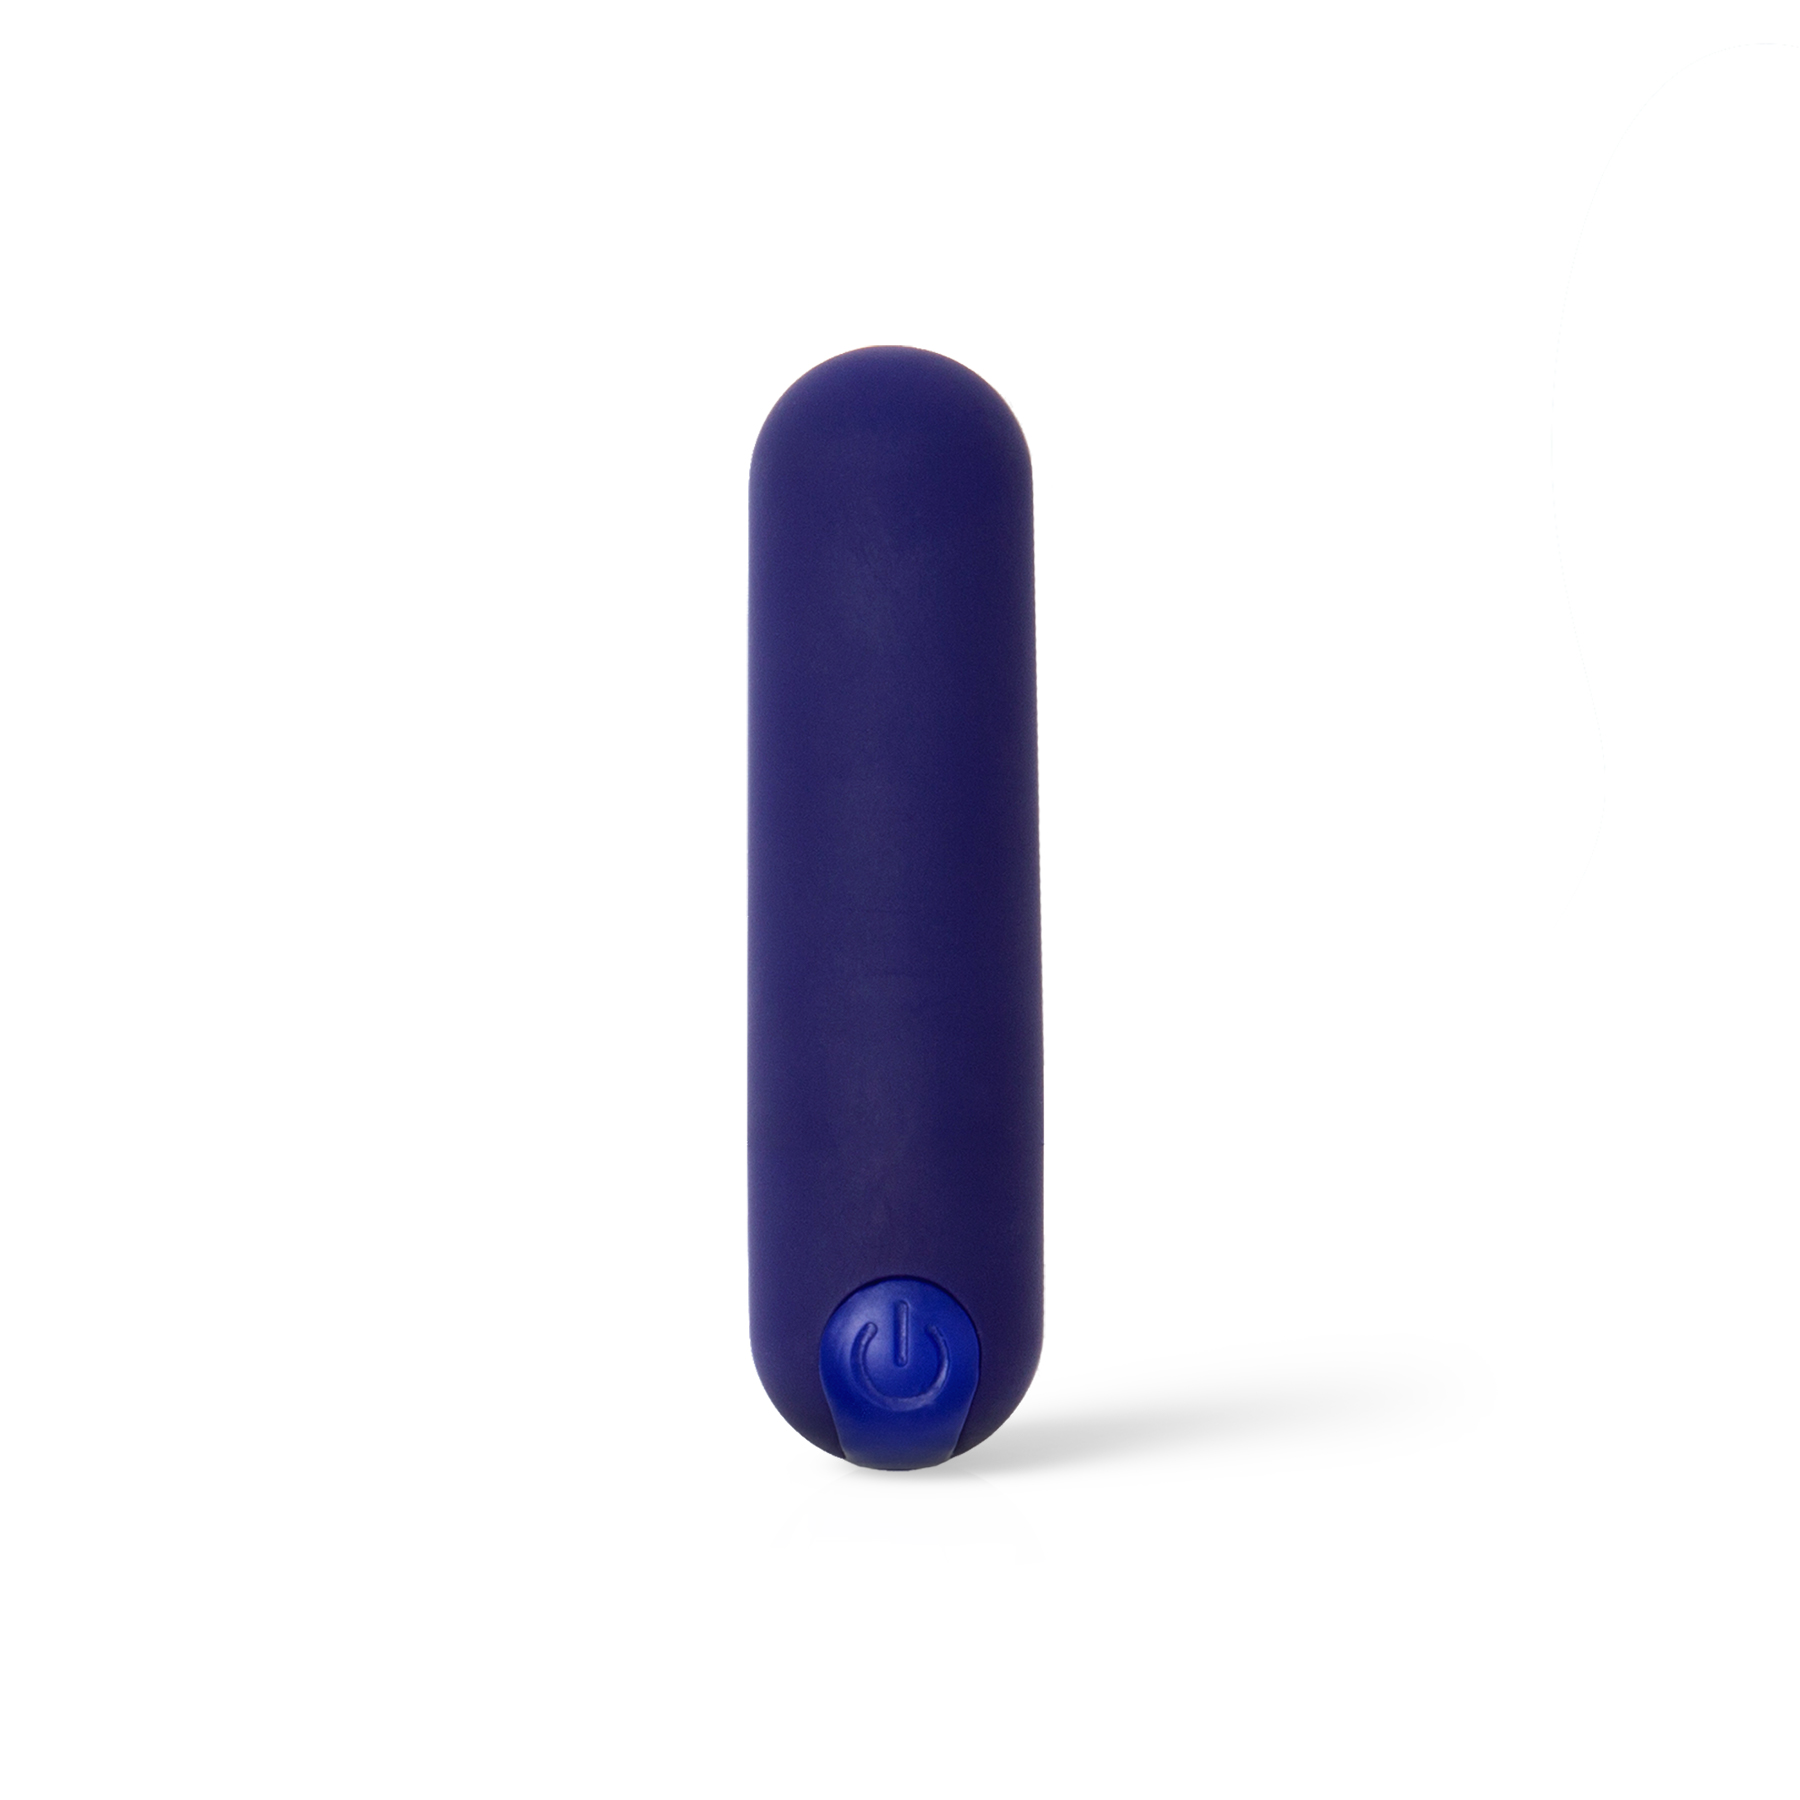 plusOne bullet vibrator in purple